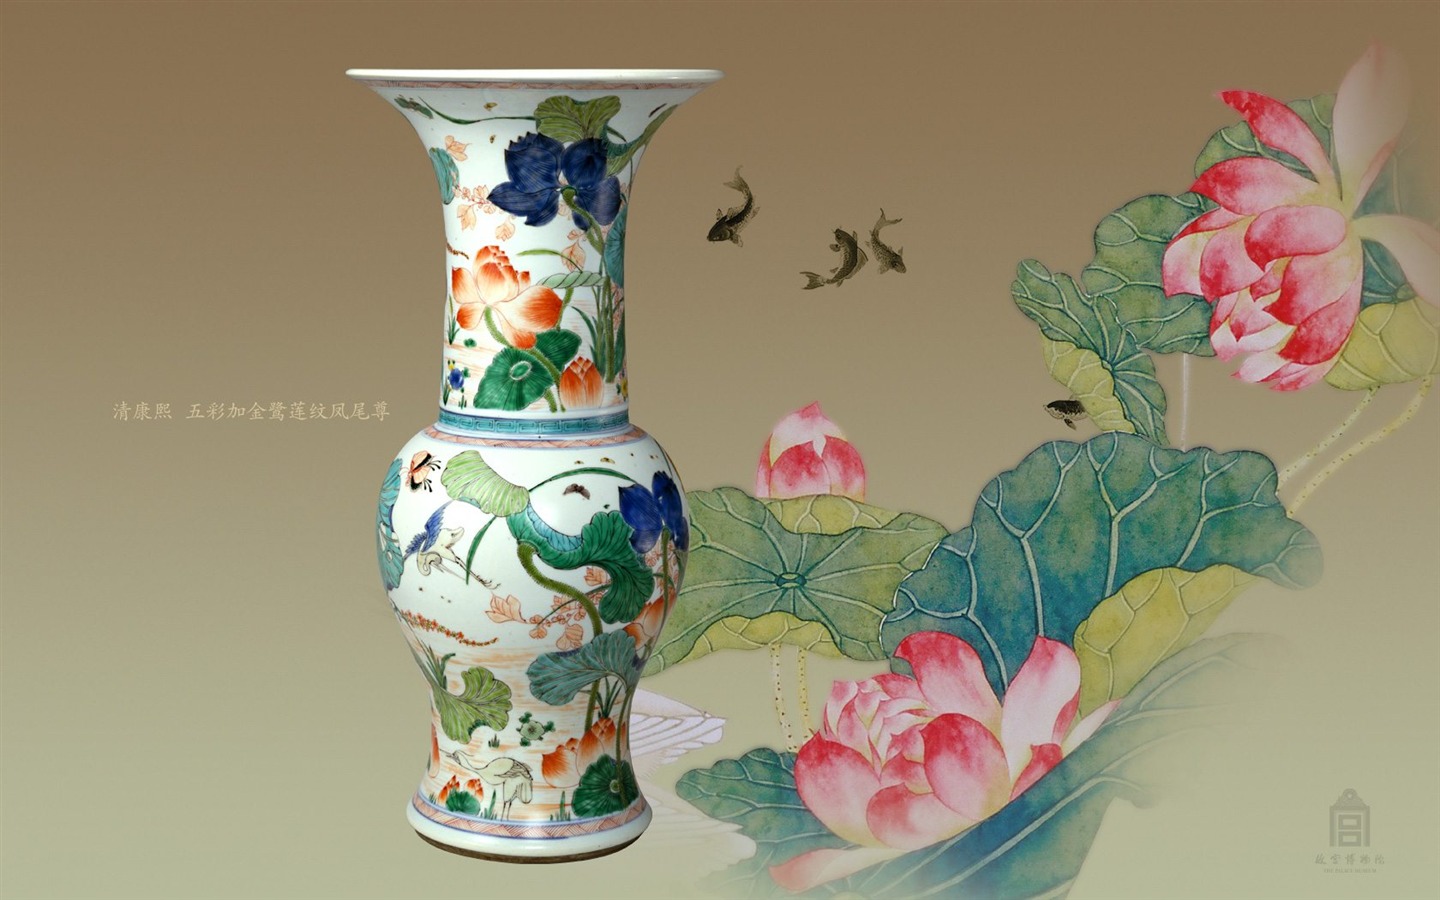 北京故宫博物院 文物展壁纸(二)5 - 1440x900